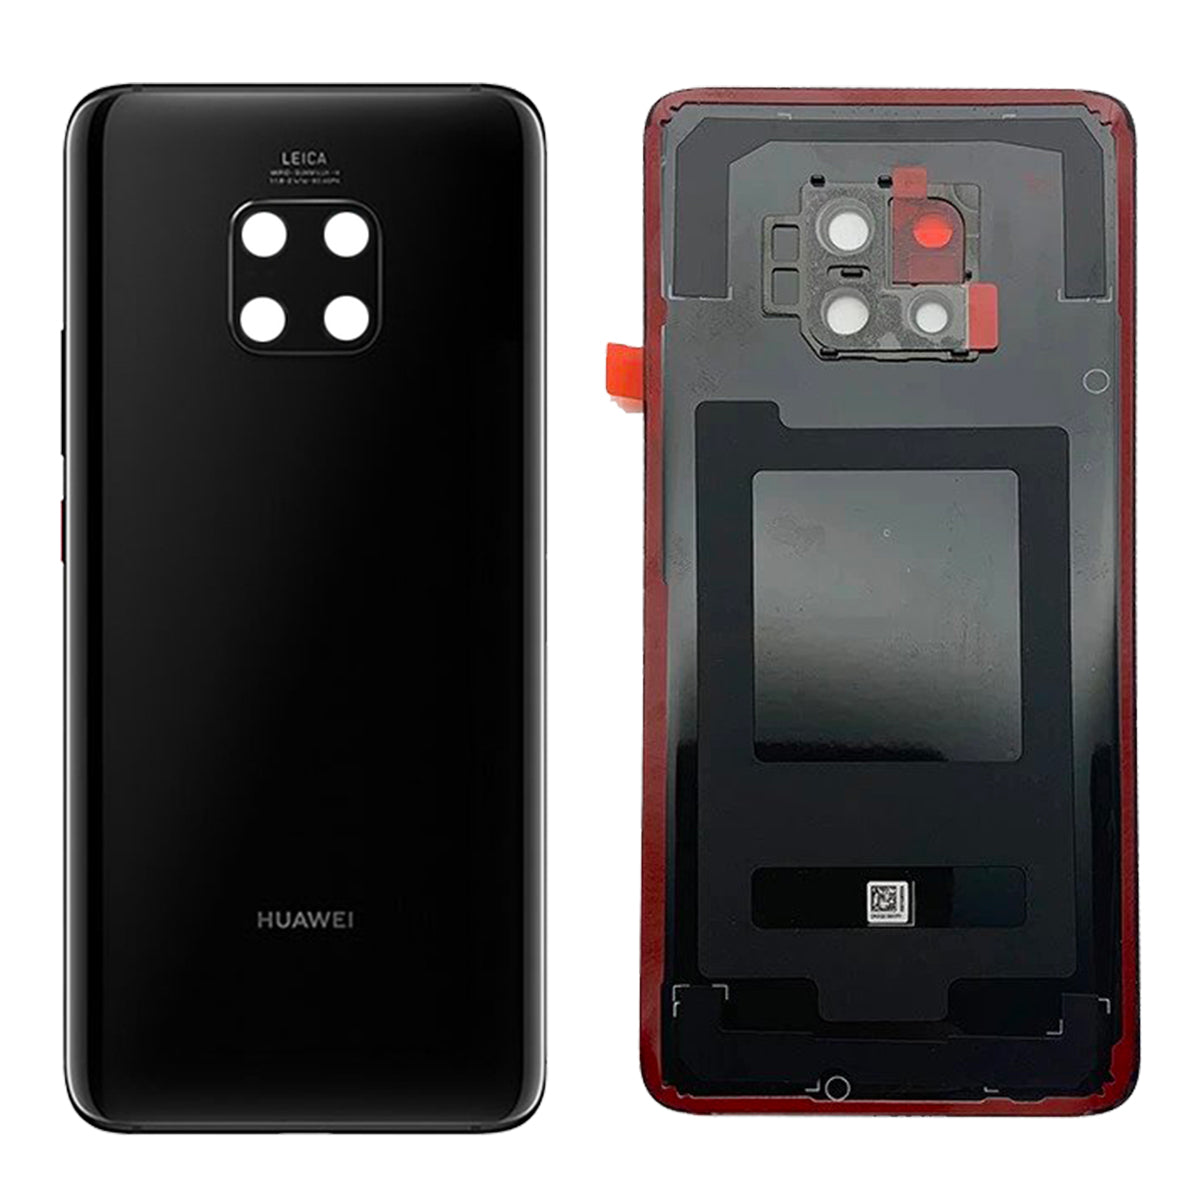 Scocca Posteriore + Vetro Fotocamera per Huawei Mate 20 Pro LYA-L09 L29 Telaio Vetro Coperchio Back Cover Copri Batteria